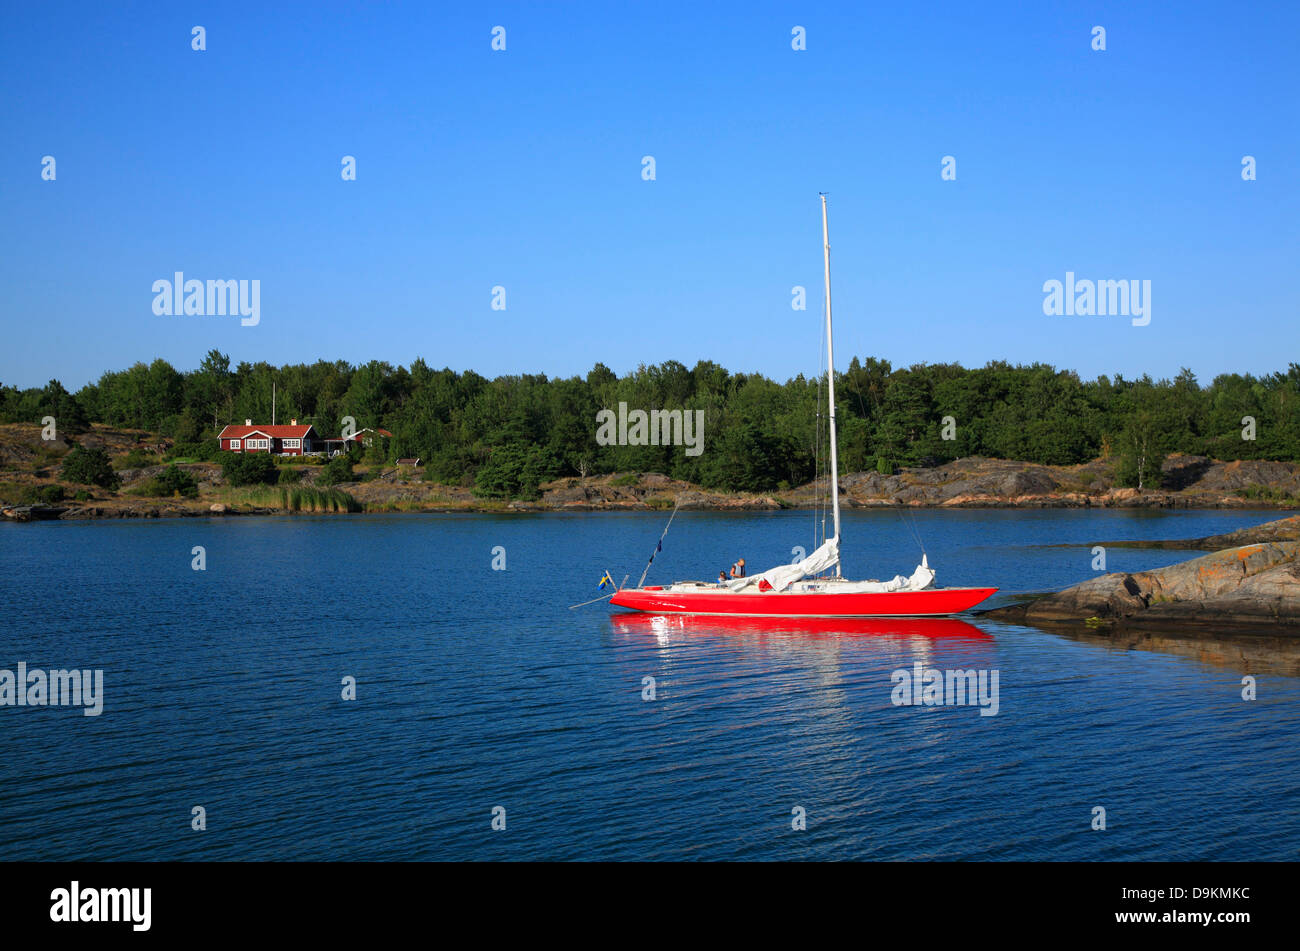 Bateau à voile près de Nattaroe, île de l'archipel de Stockholm, côte de la mer Baltique, la Suède, Scandinavie Banque D'Images